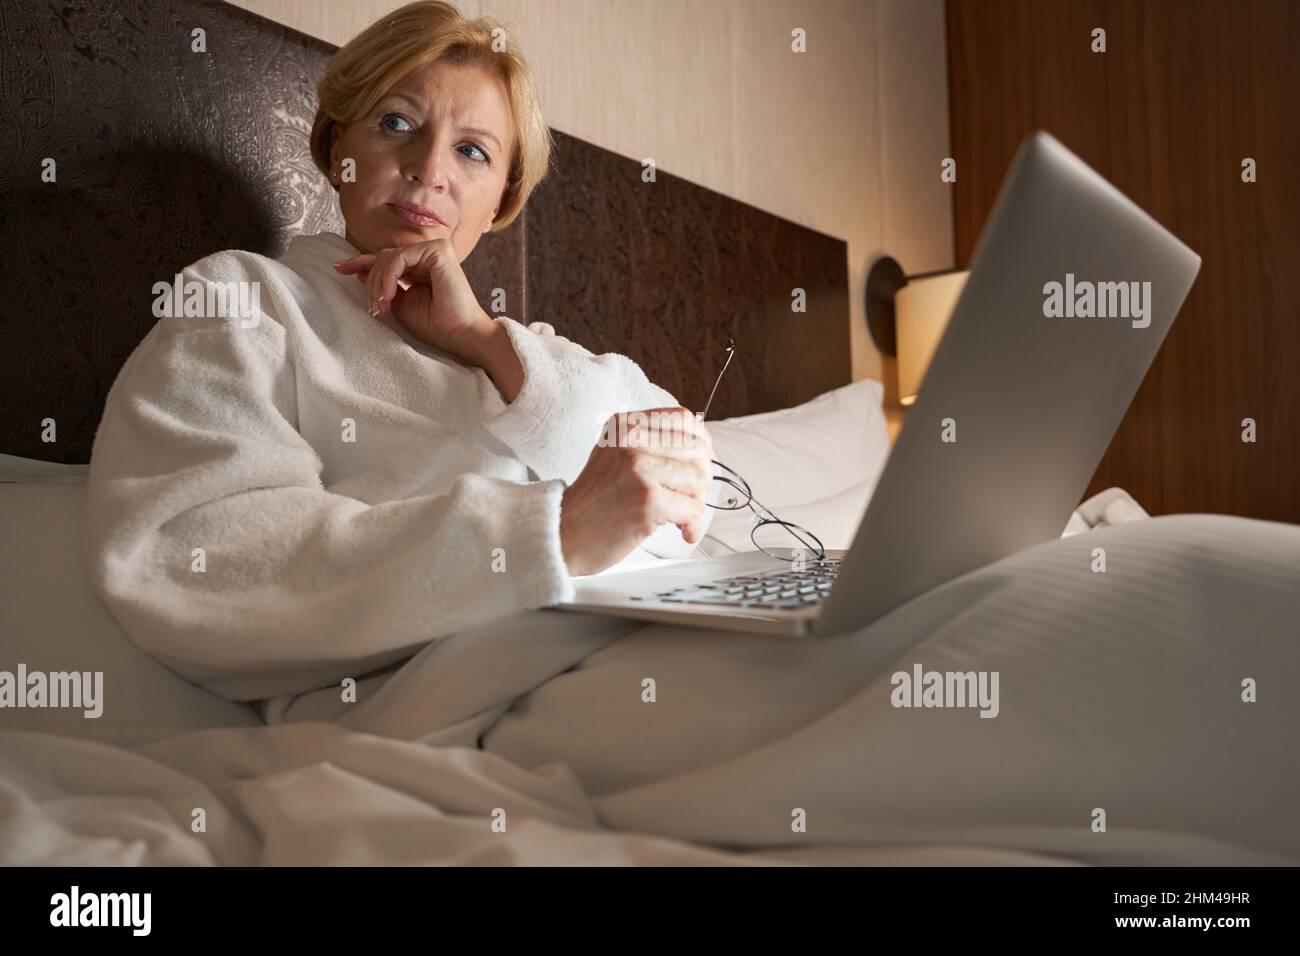 Besorgt blonde Frau mit ihrem Laptop im Bett Stockfoto